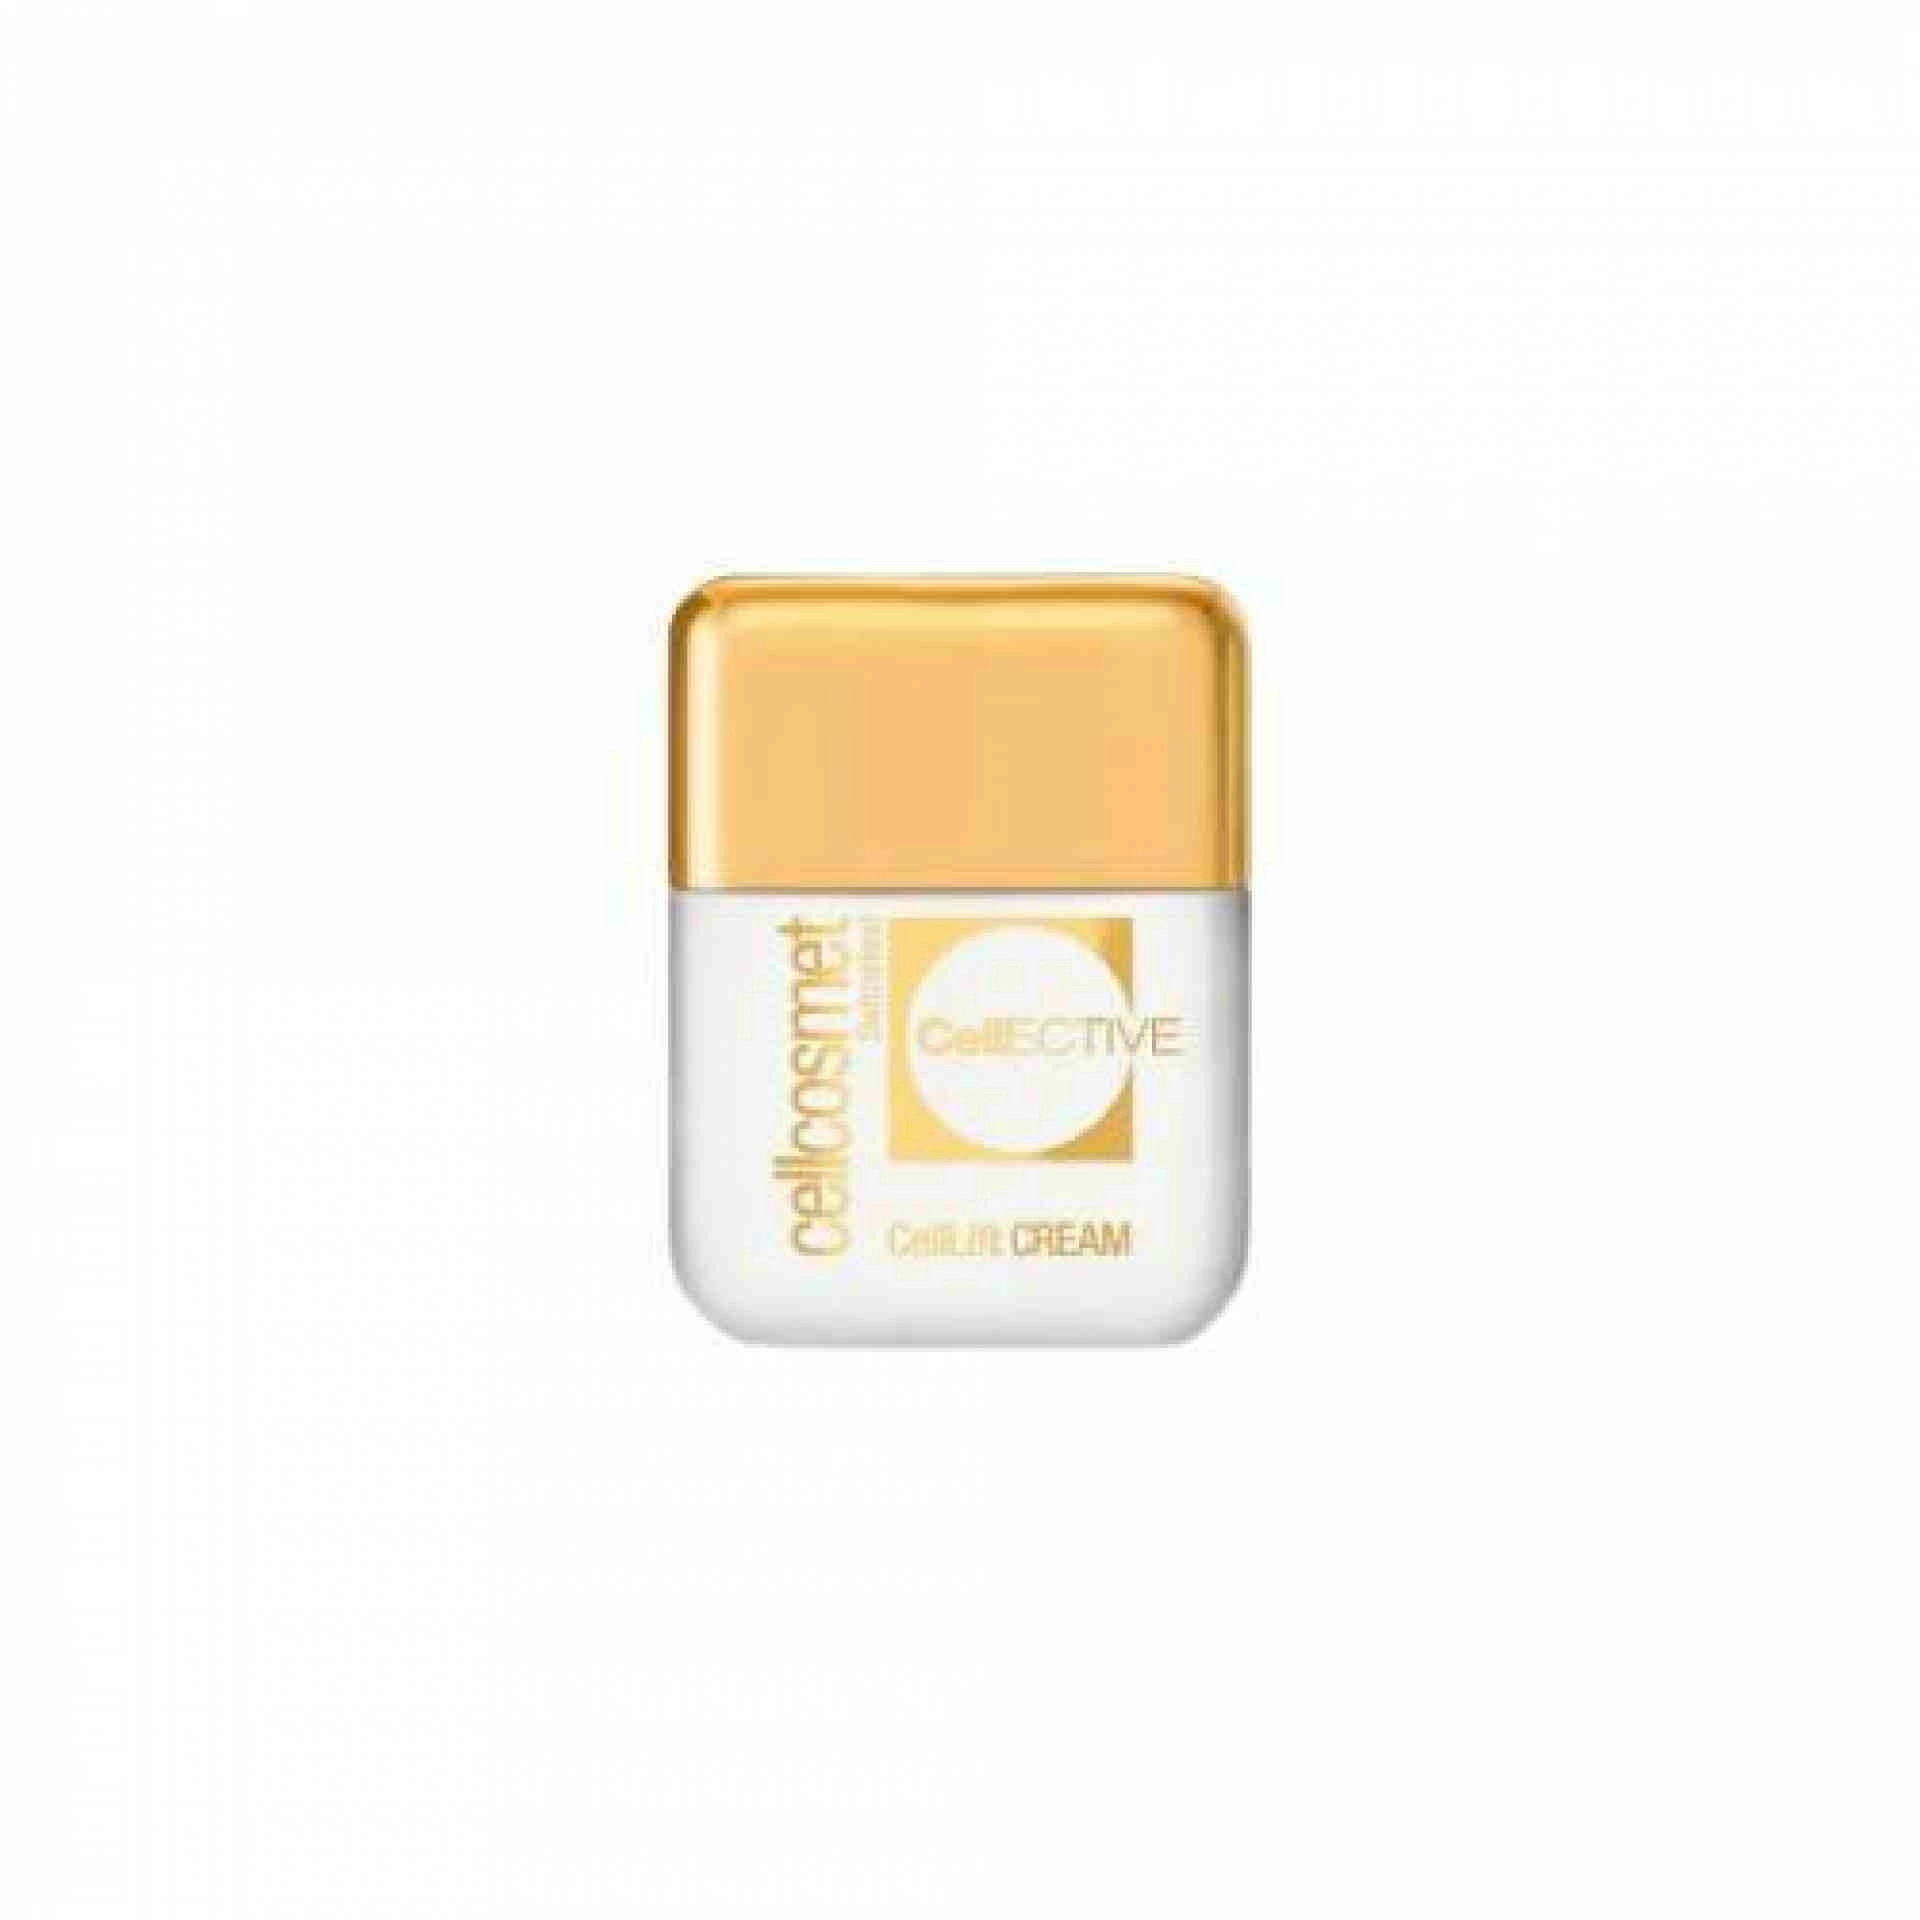 CellEctive CellLift Cream 50ml | Crema Reafirmante - Cellcosmet ®